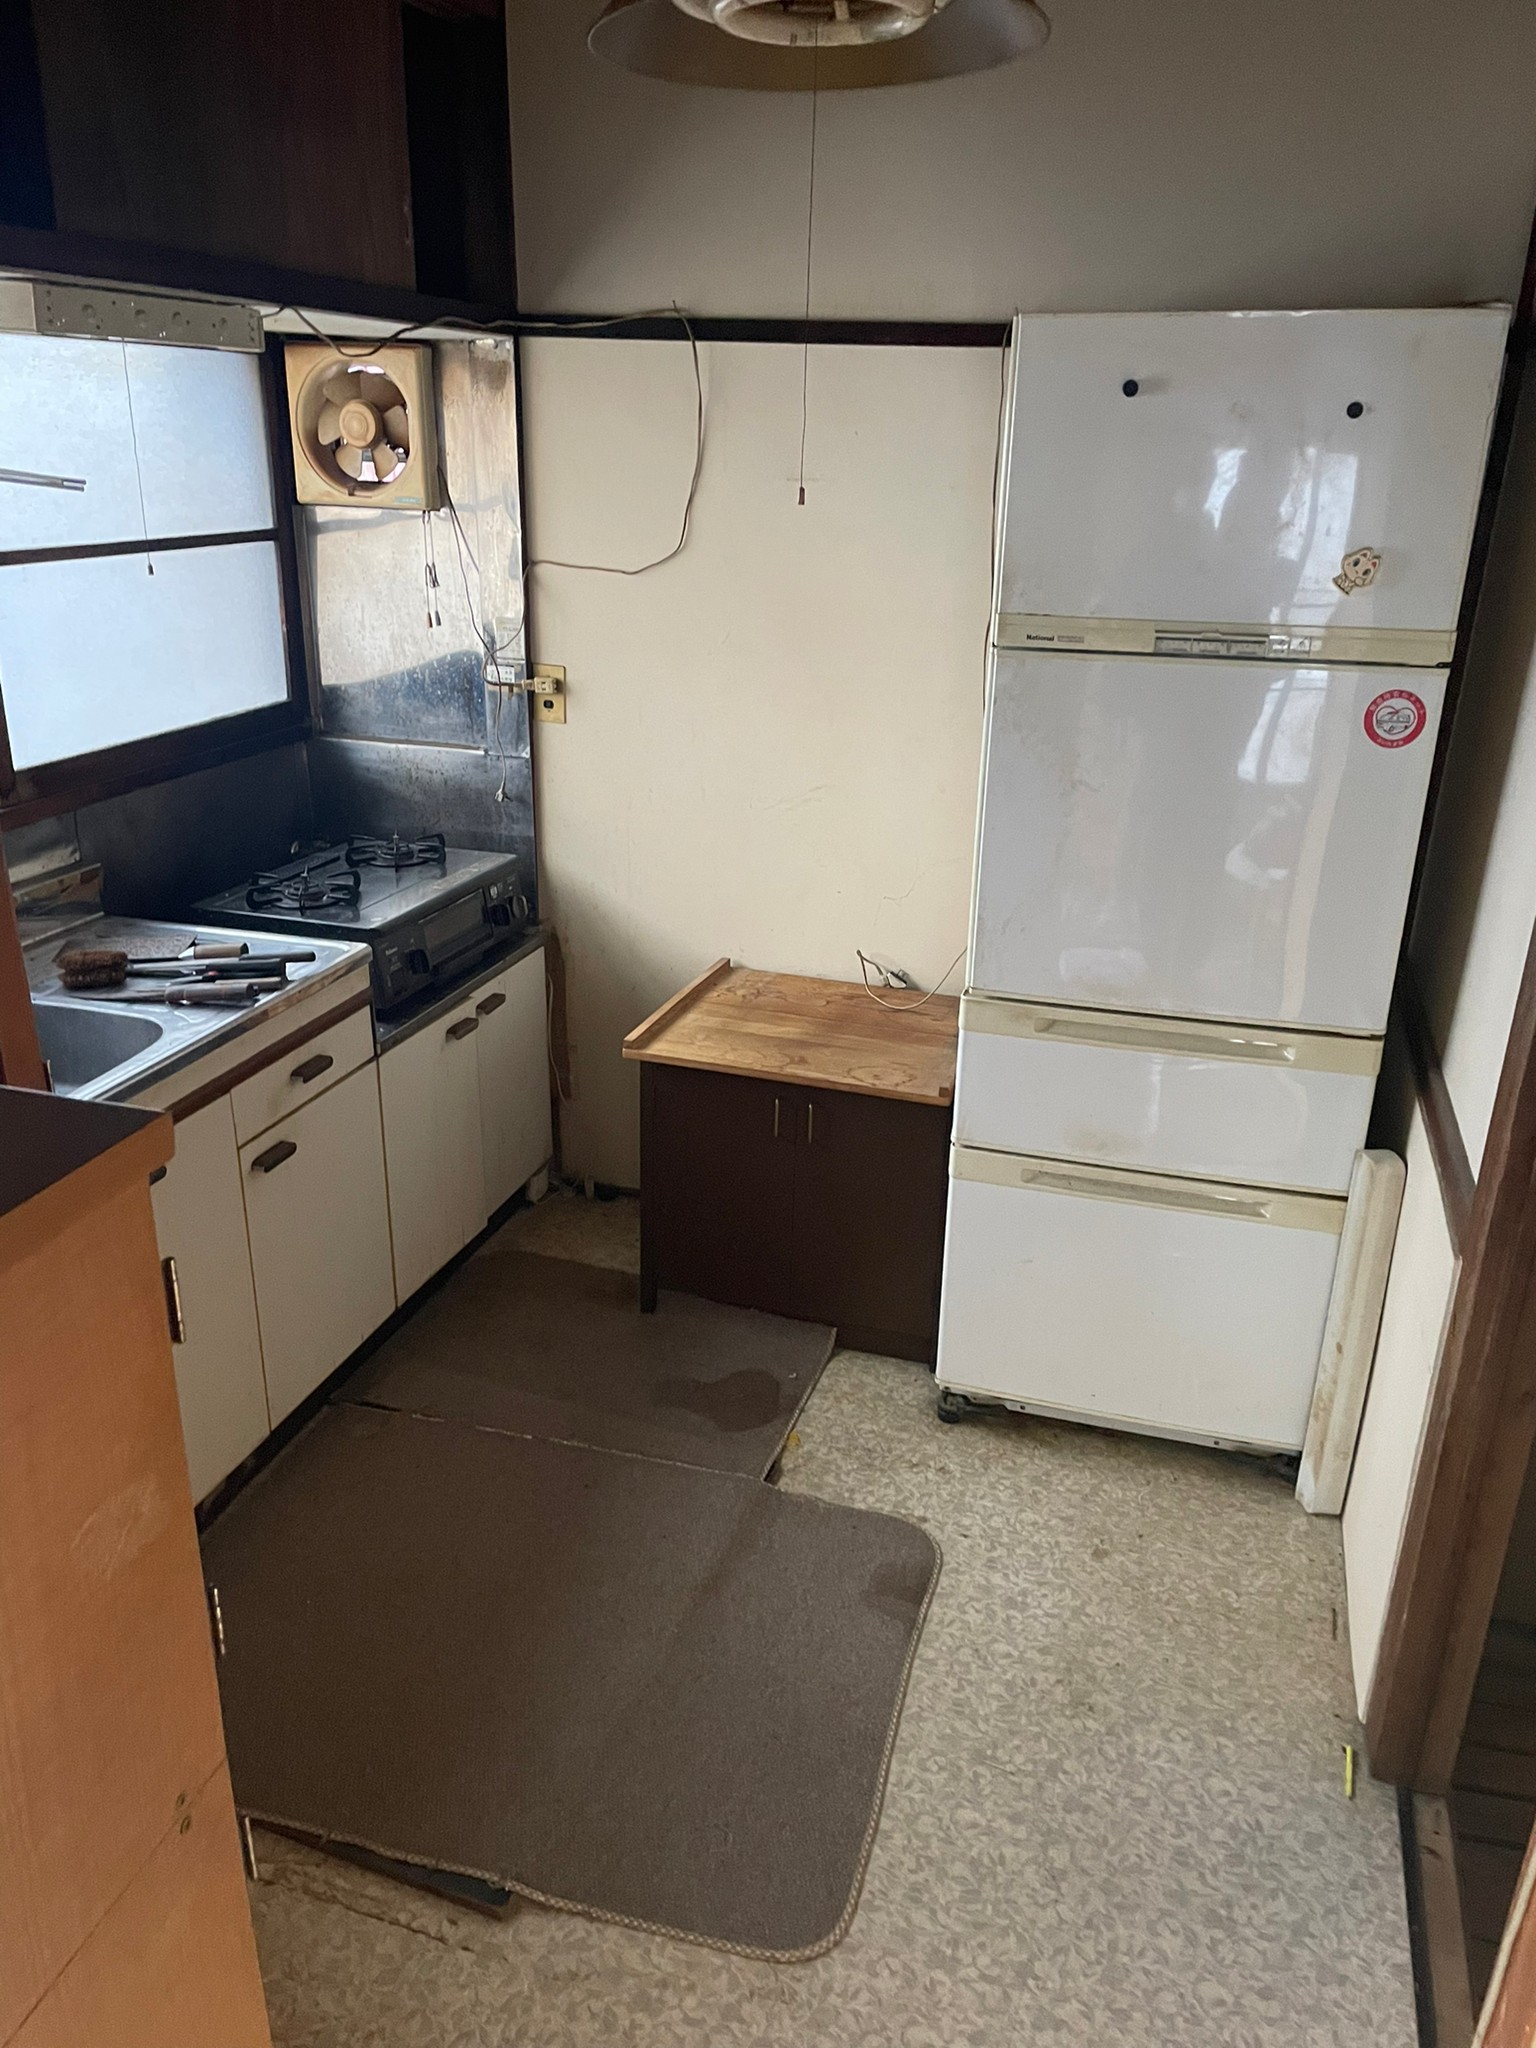 冷蔵庫、棚、キッチンマット、調理器具、食器棚の回収前の状態